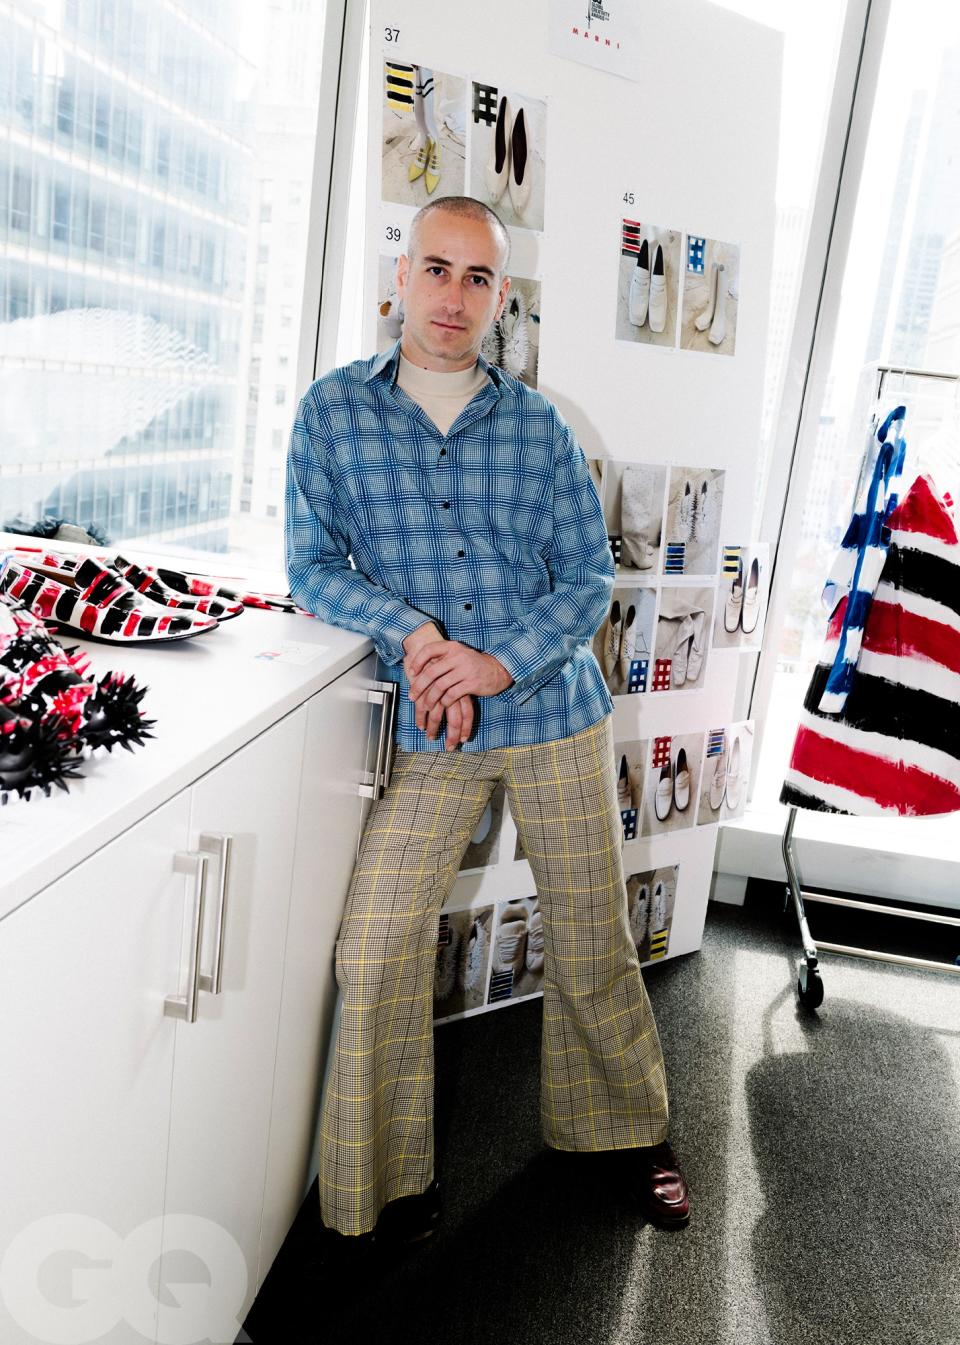 Marni creative director Francesco Risso in the Condé Nast fashion closet.